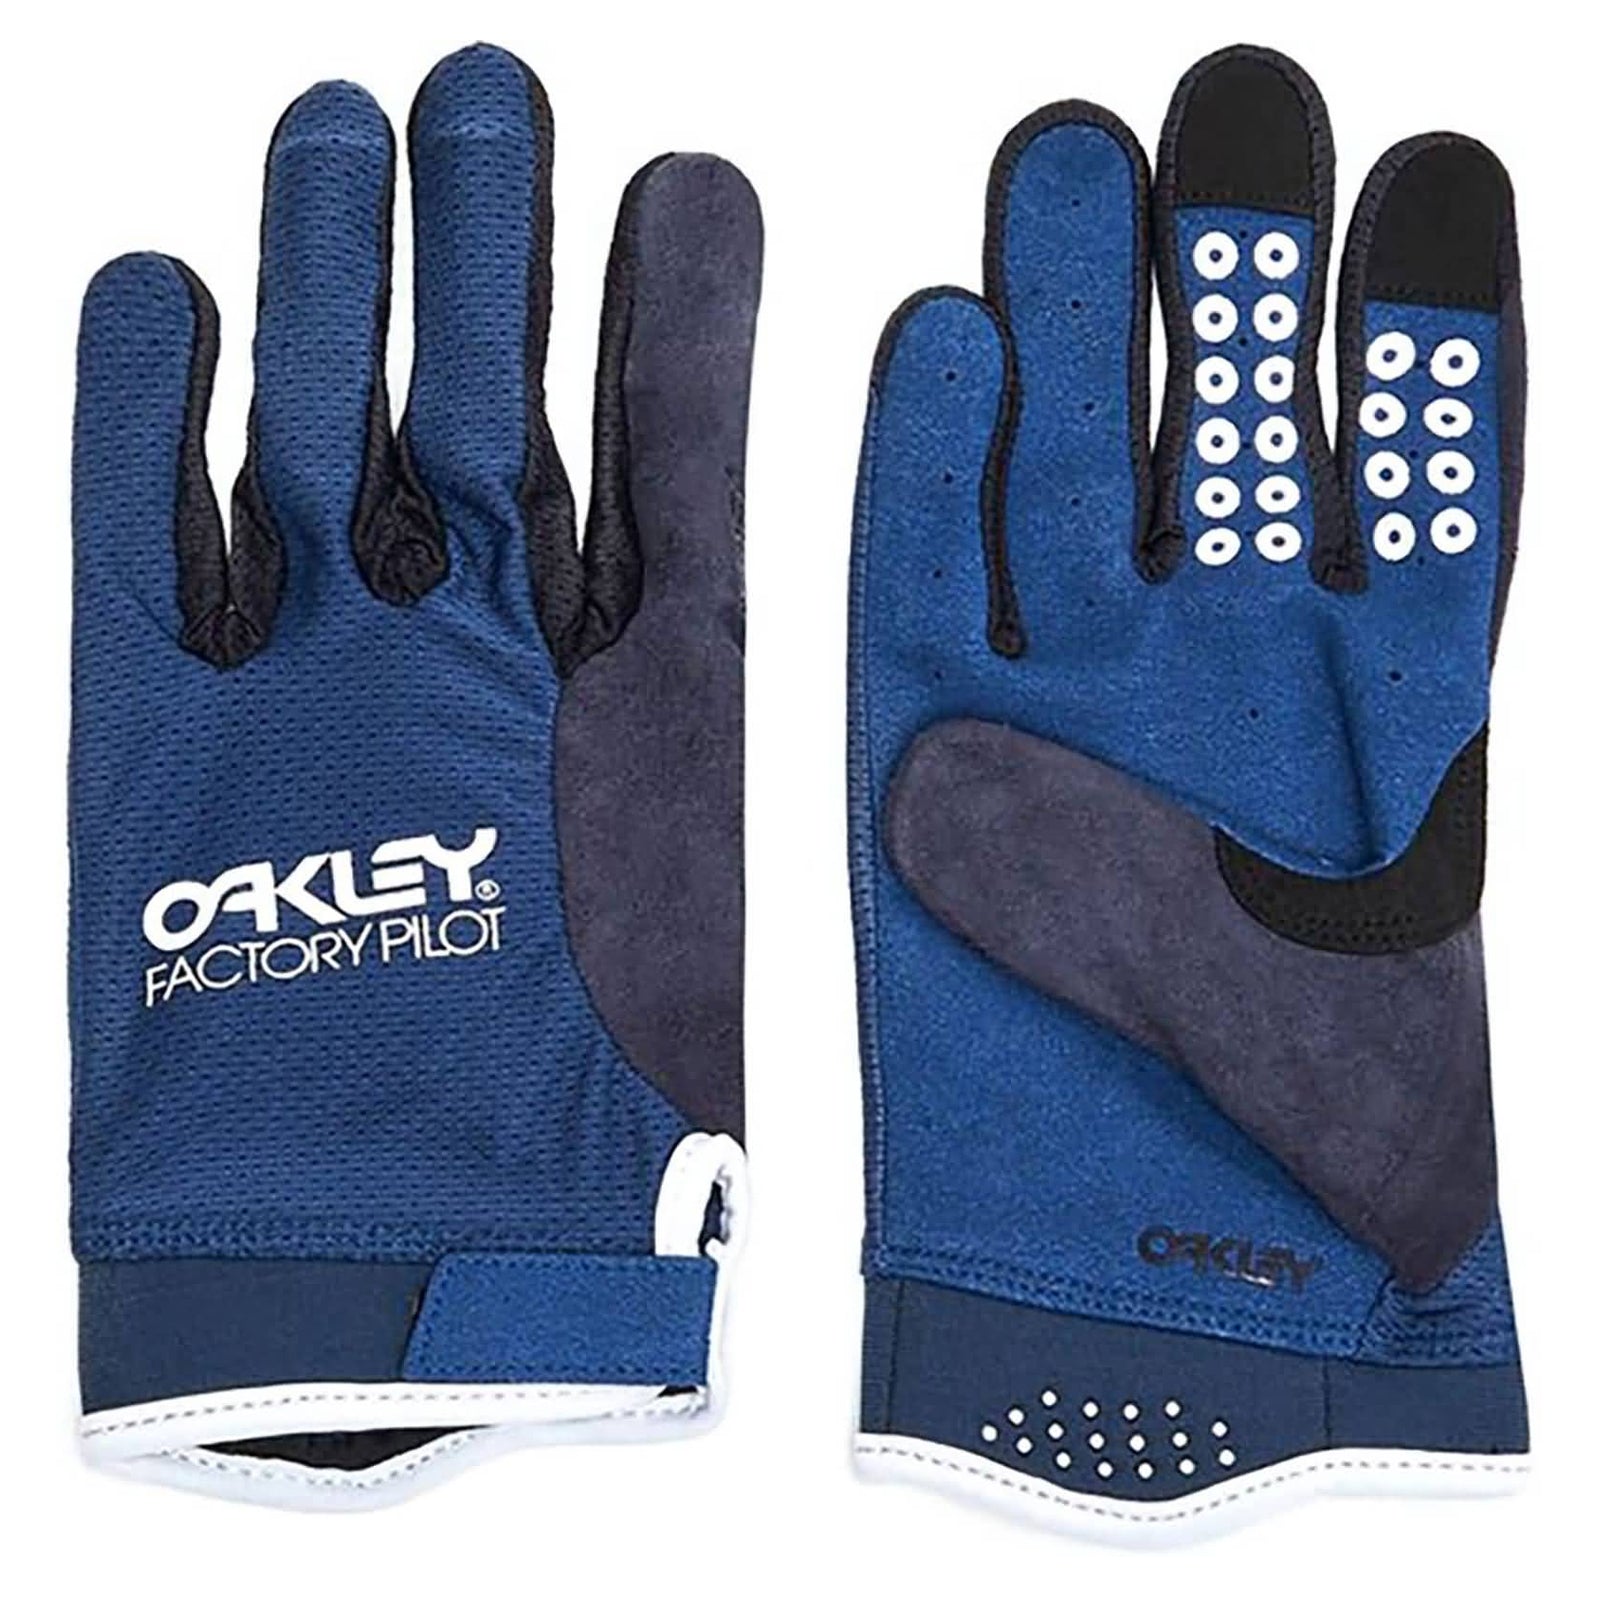 Oakley All Mountain Men's MTB Gloves